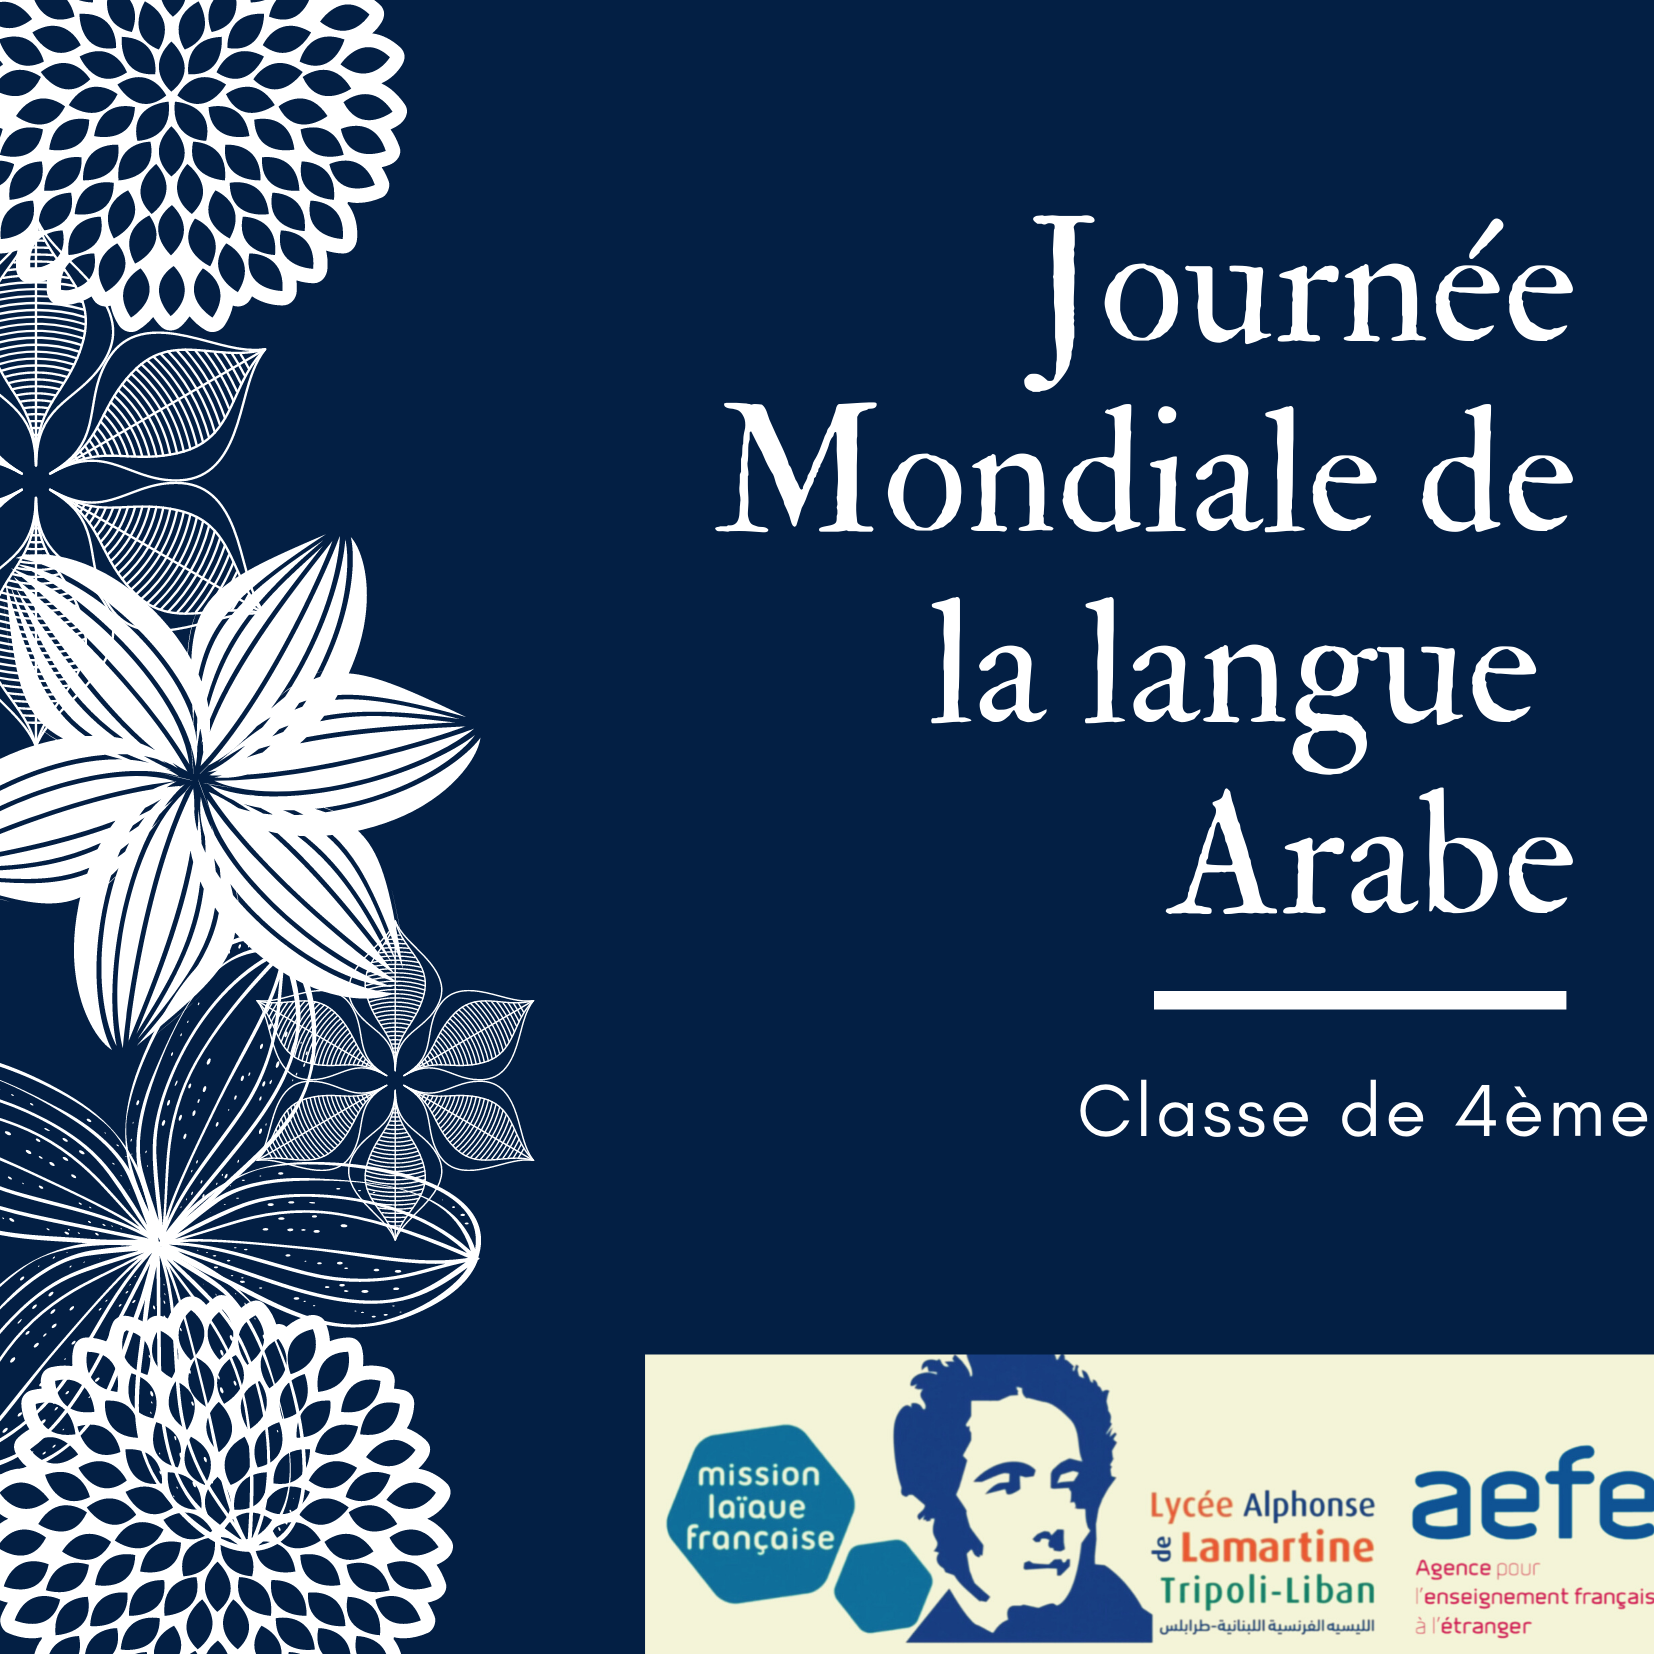 Journée mondiale de la langue arabe